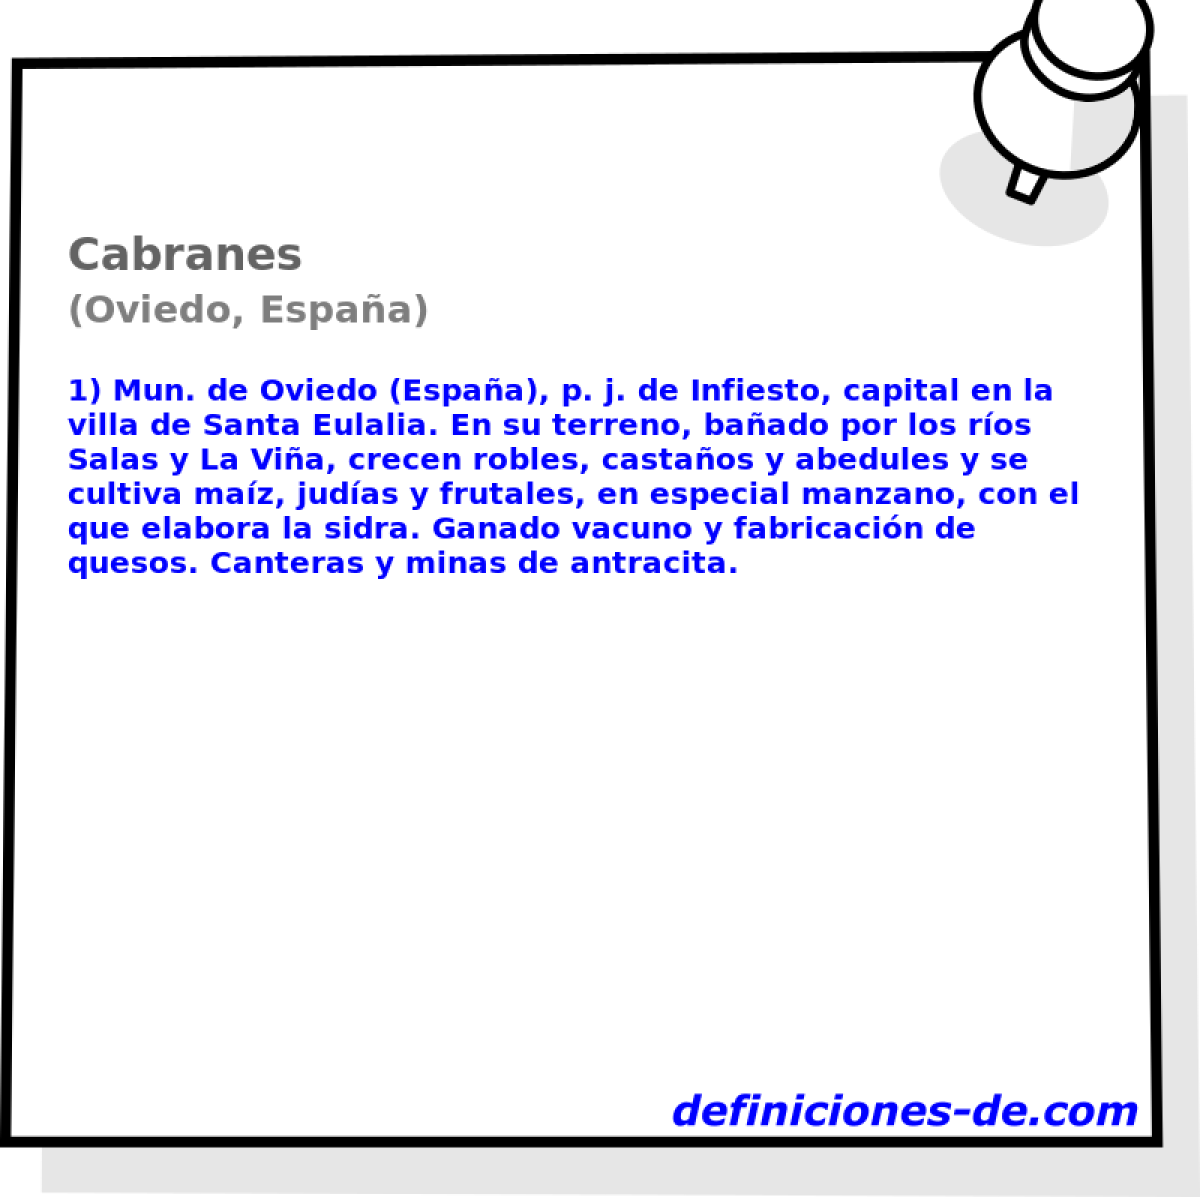 Cabranes (Oviedo, Espaa)